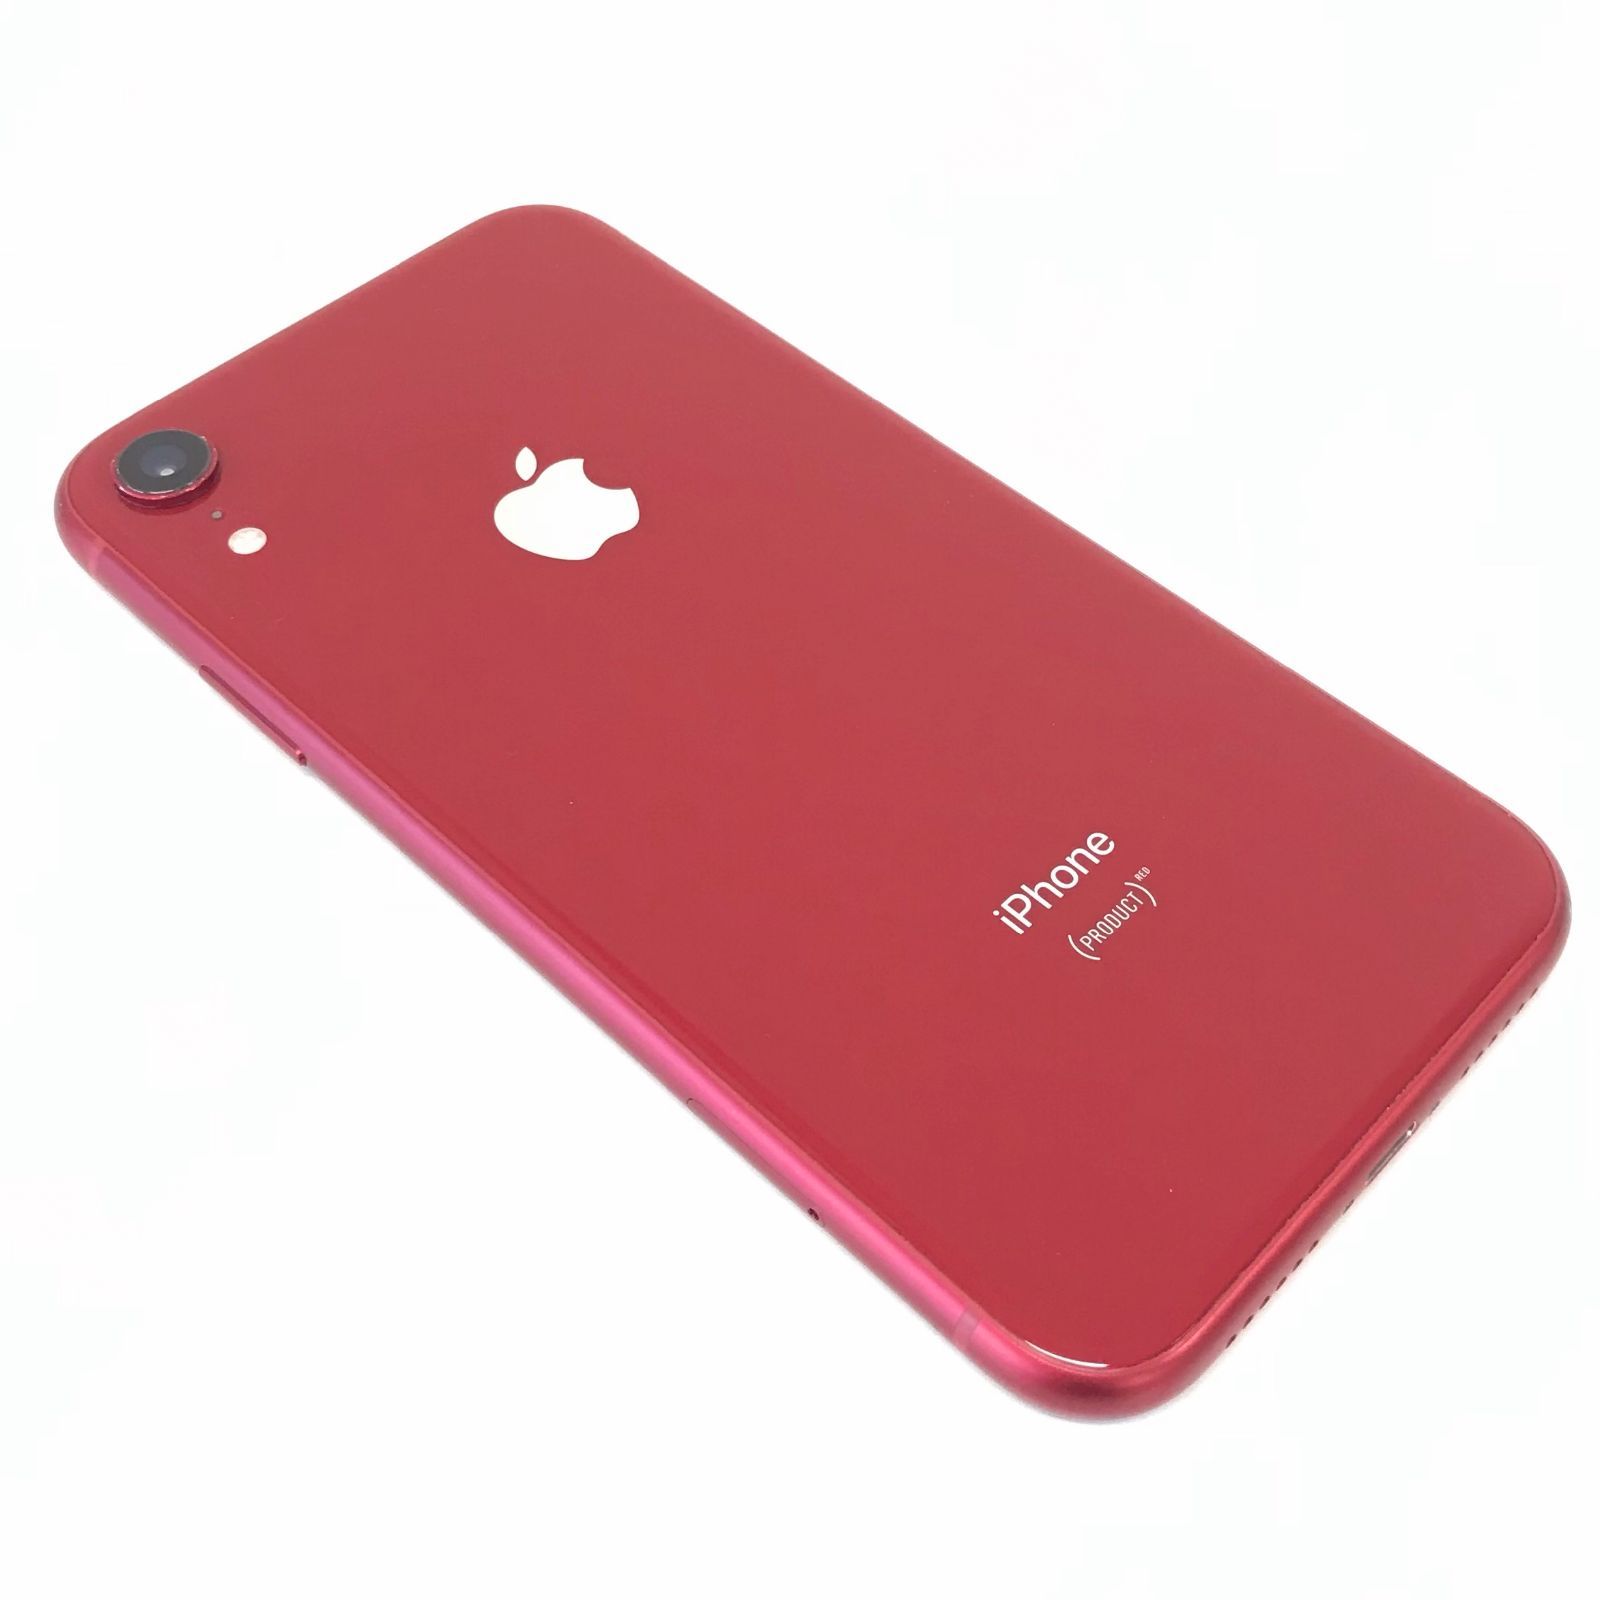 θ【SIMロック解除済】iPhone XR 256GB (PRODUCT)RED - メルカリ